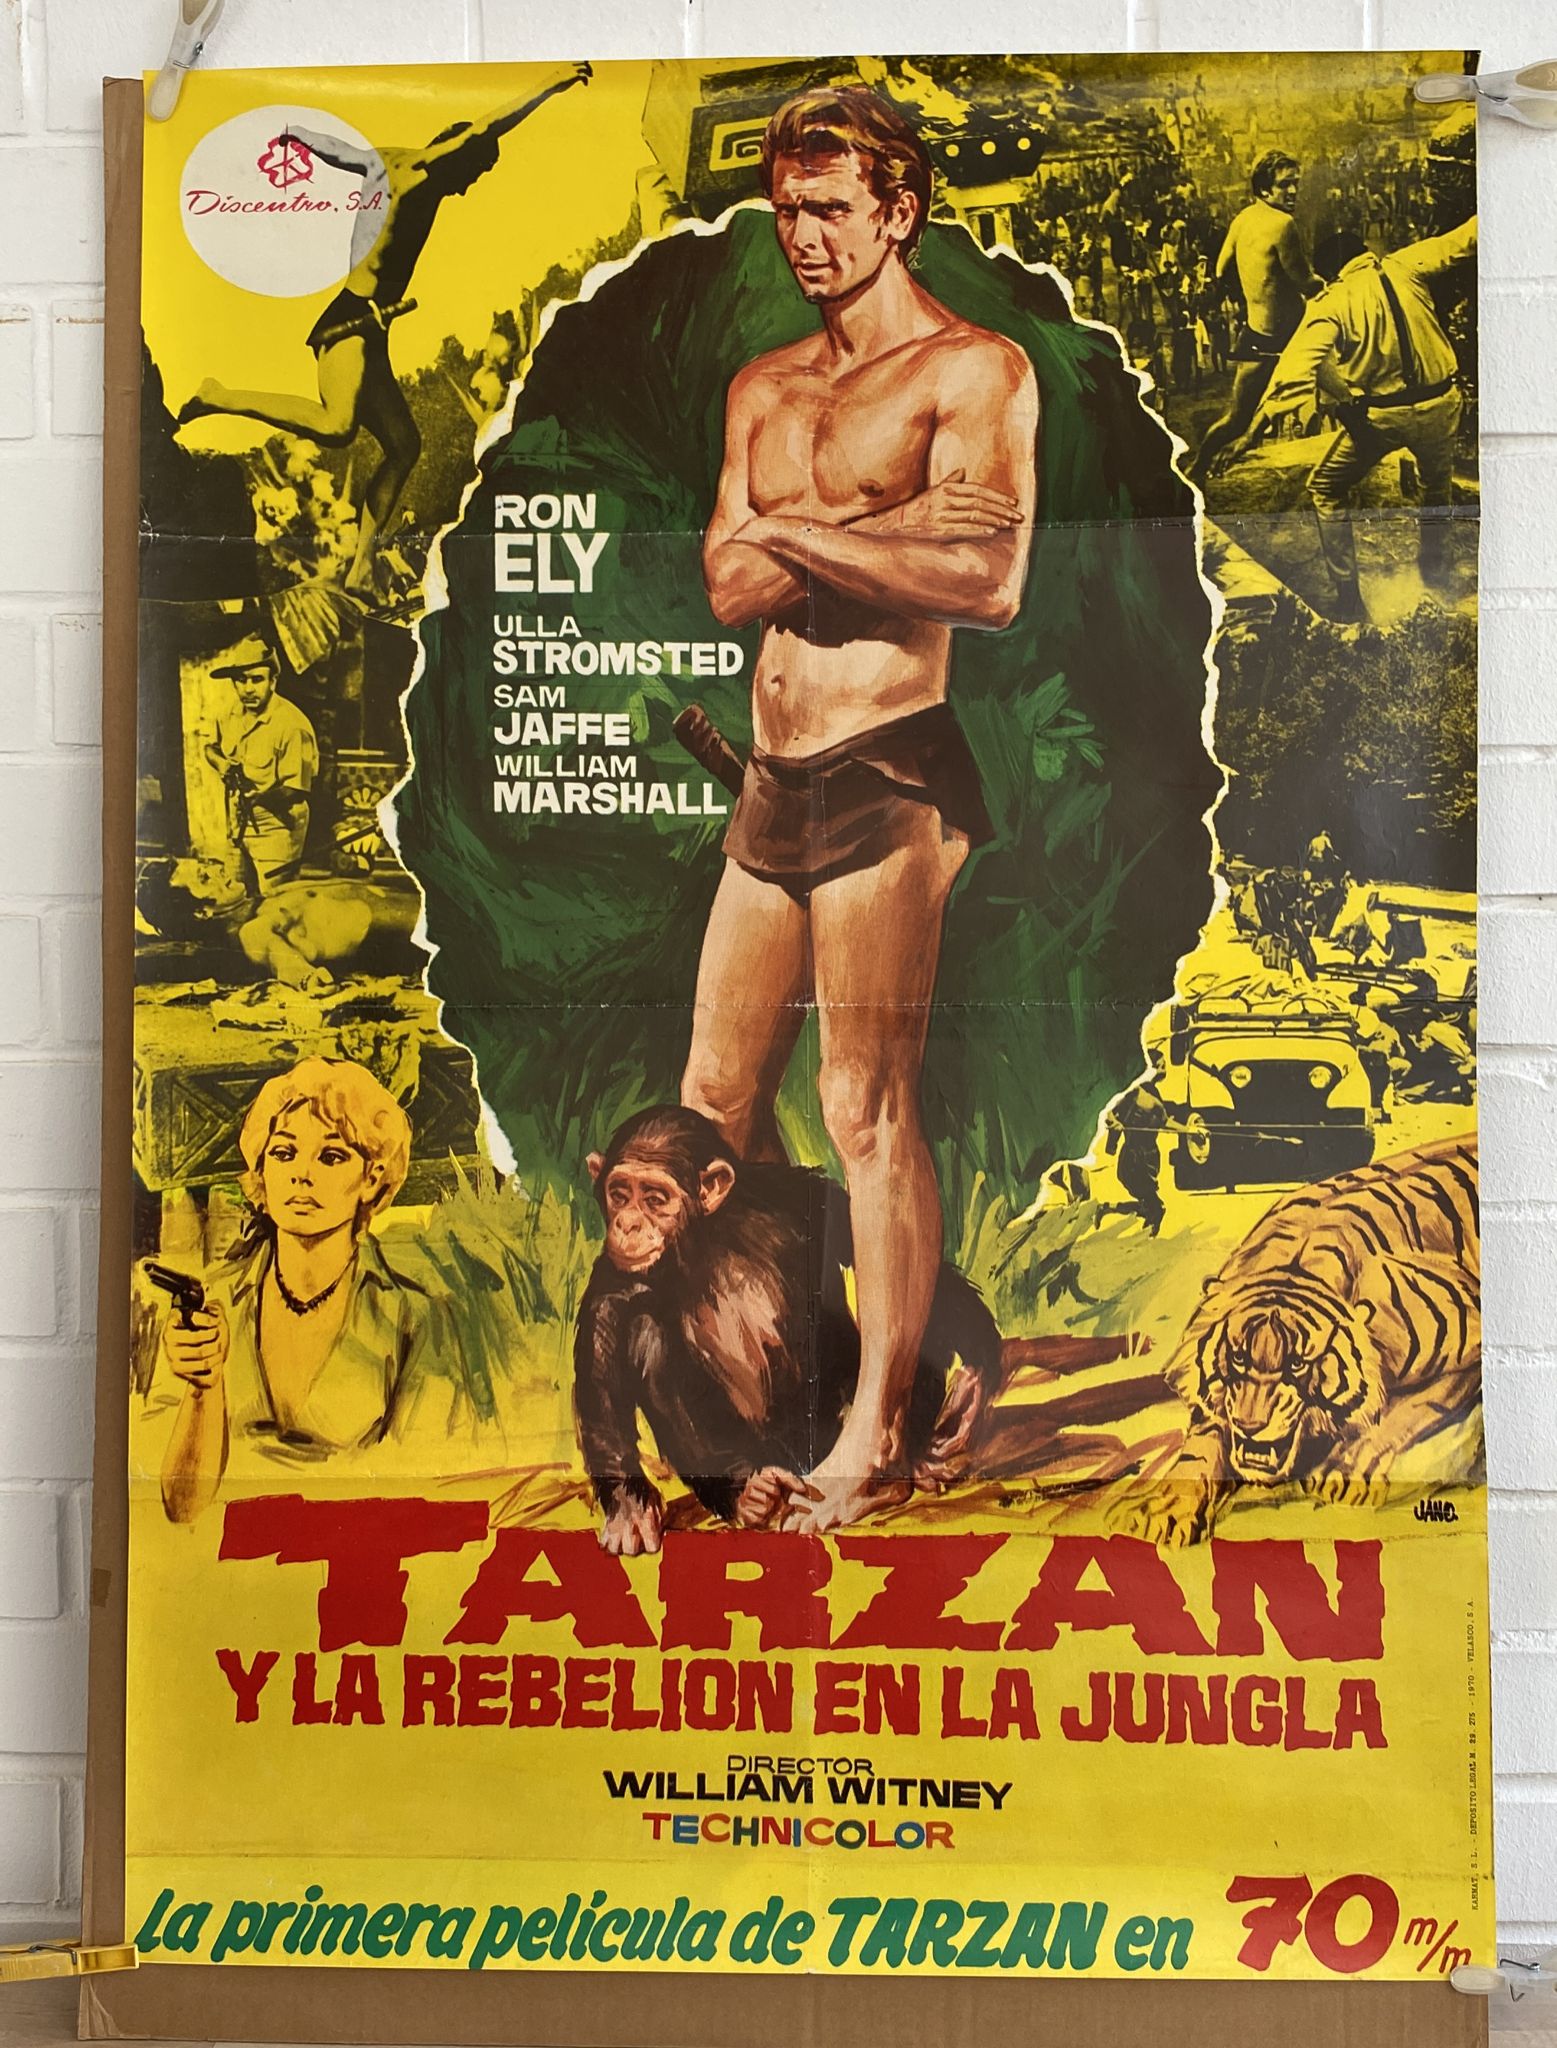 Tarzán y la REbelión en la Jungla. Cartel (100x70) de Estreno, 1970